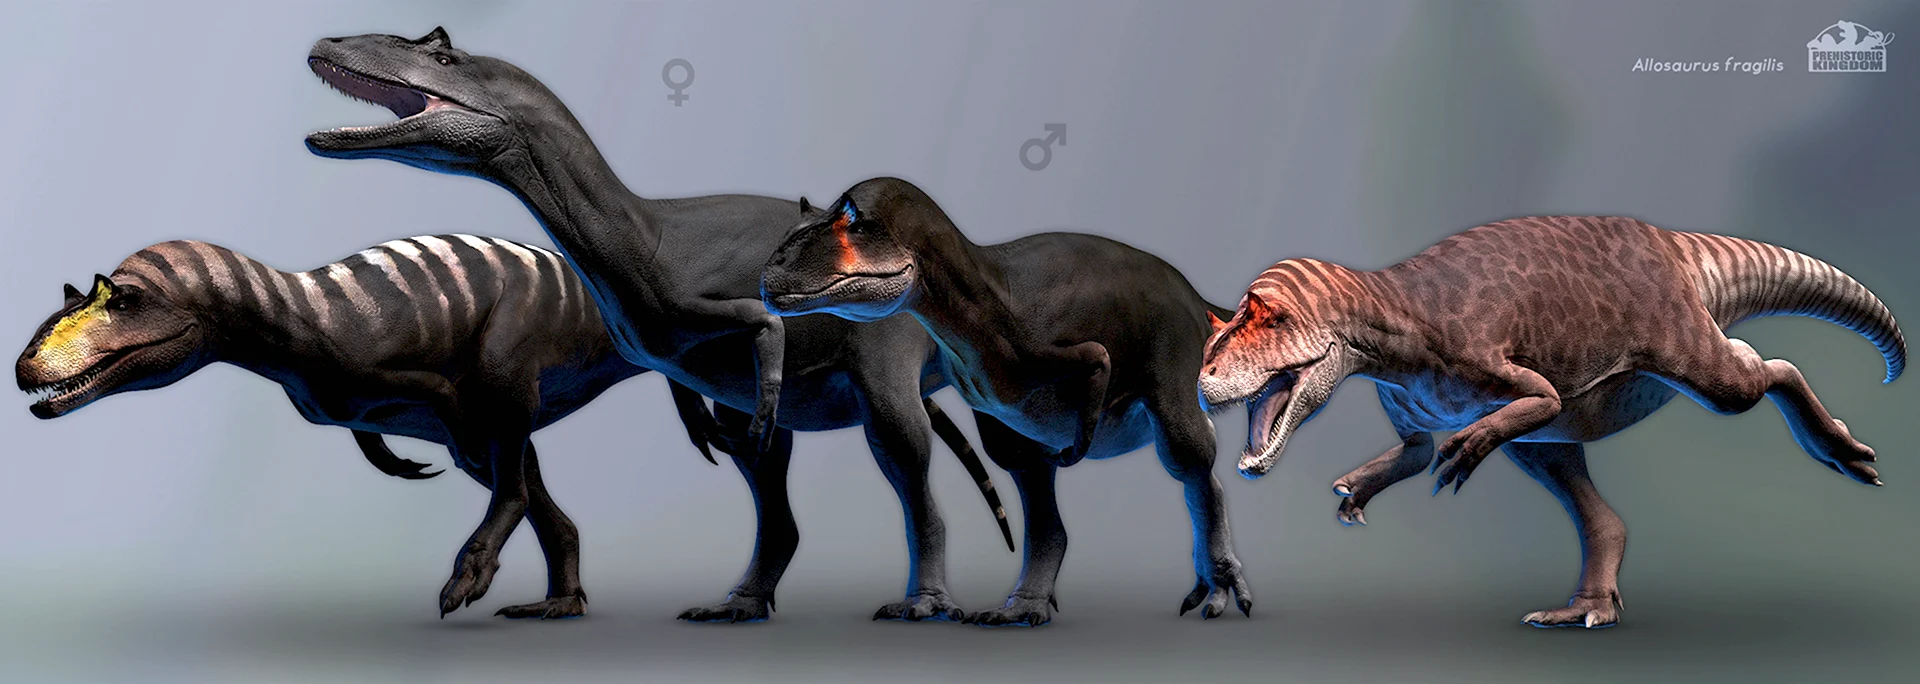 Allosaurus epanterias